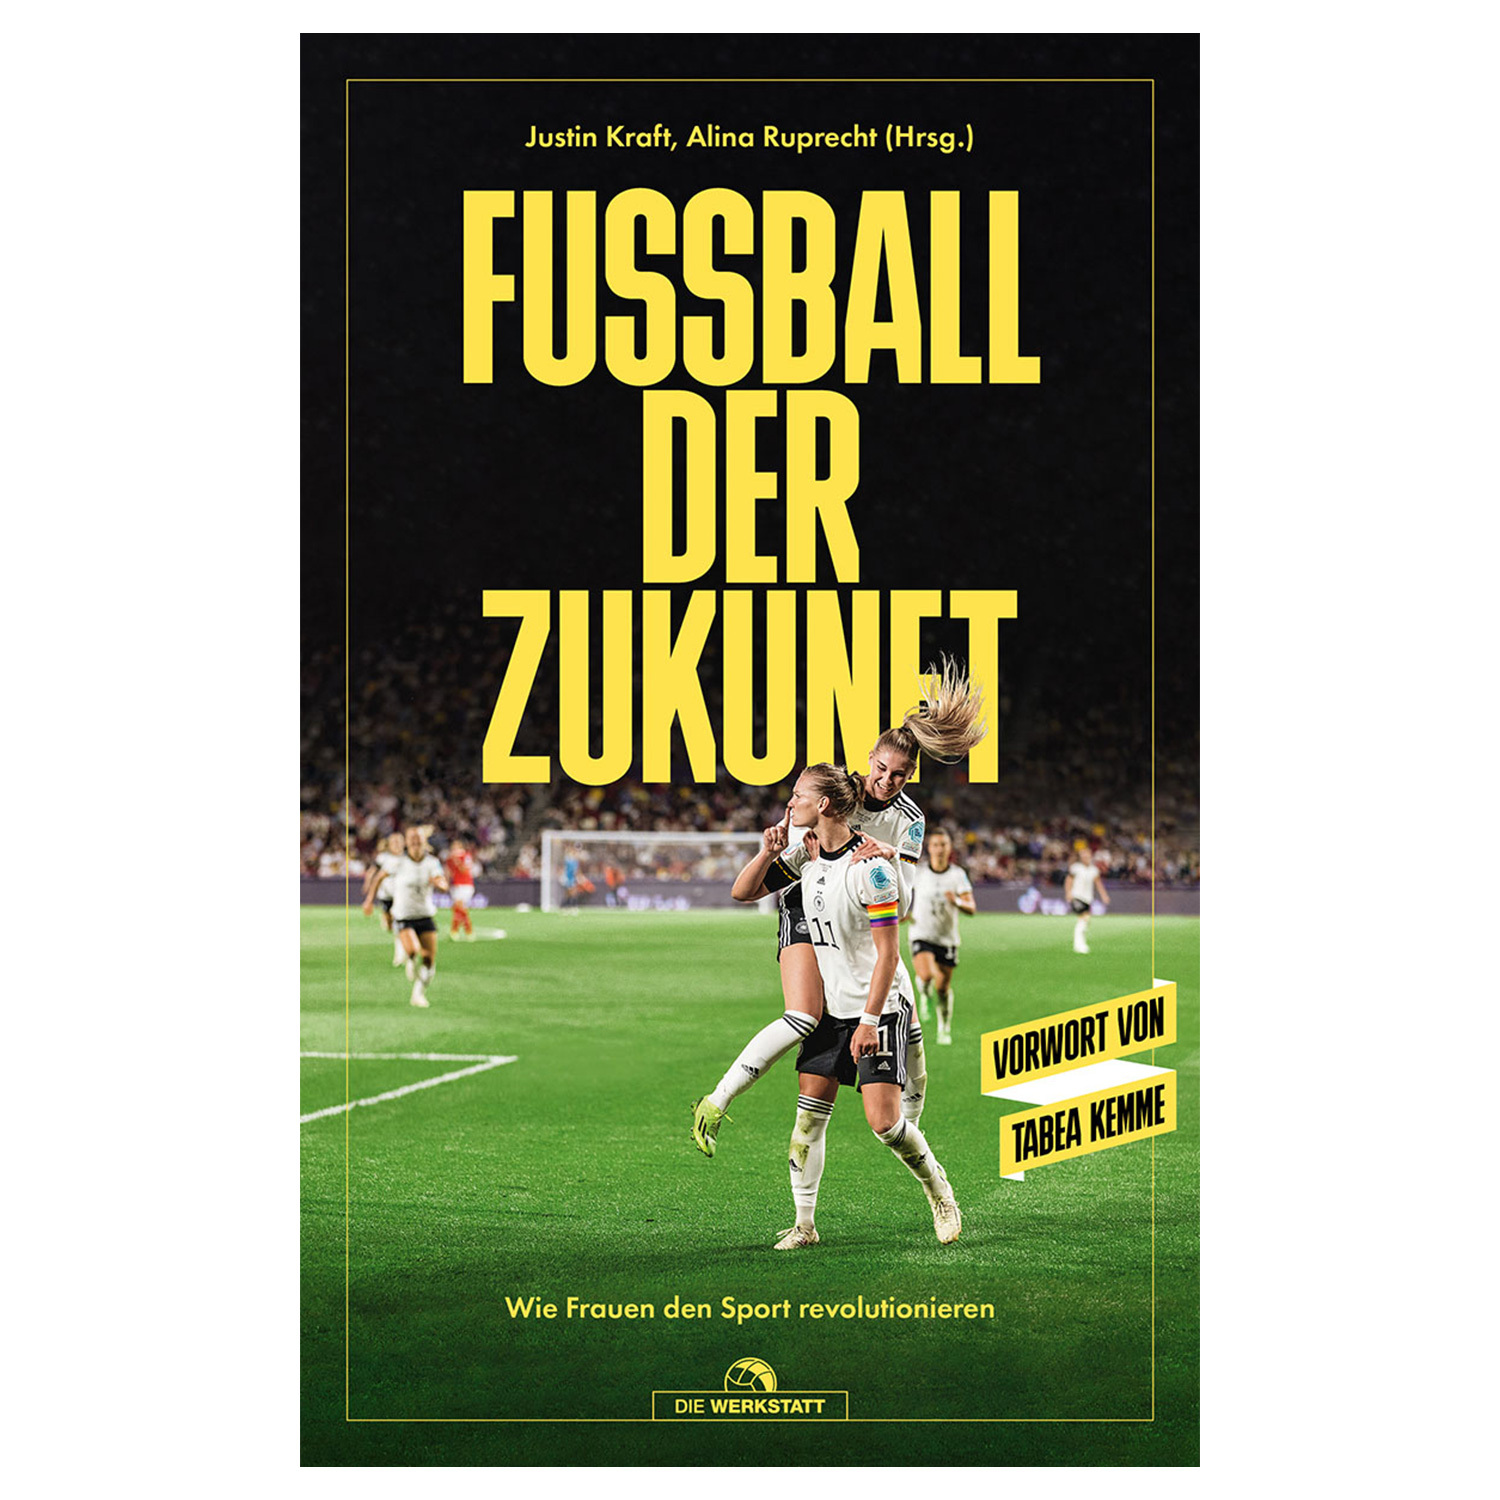 Bild 1: Buch Fussball Der Zukunft